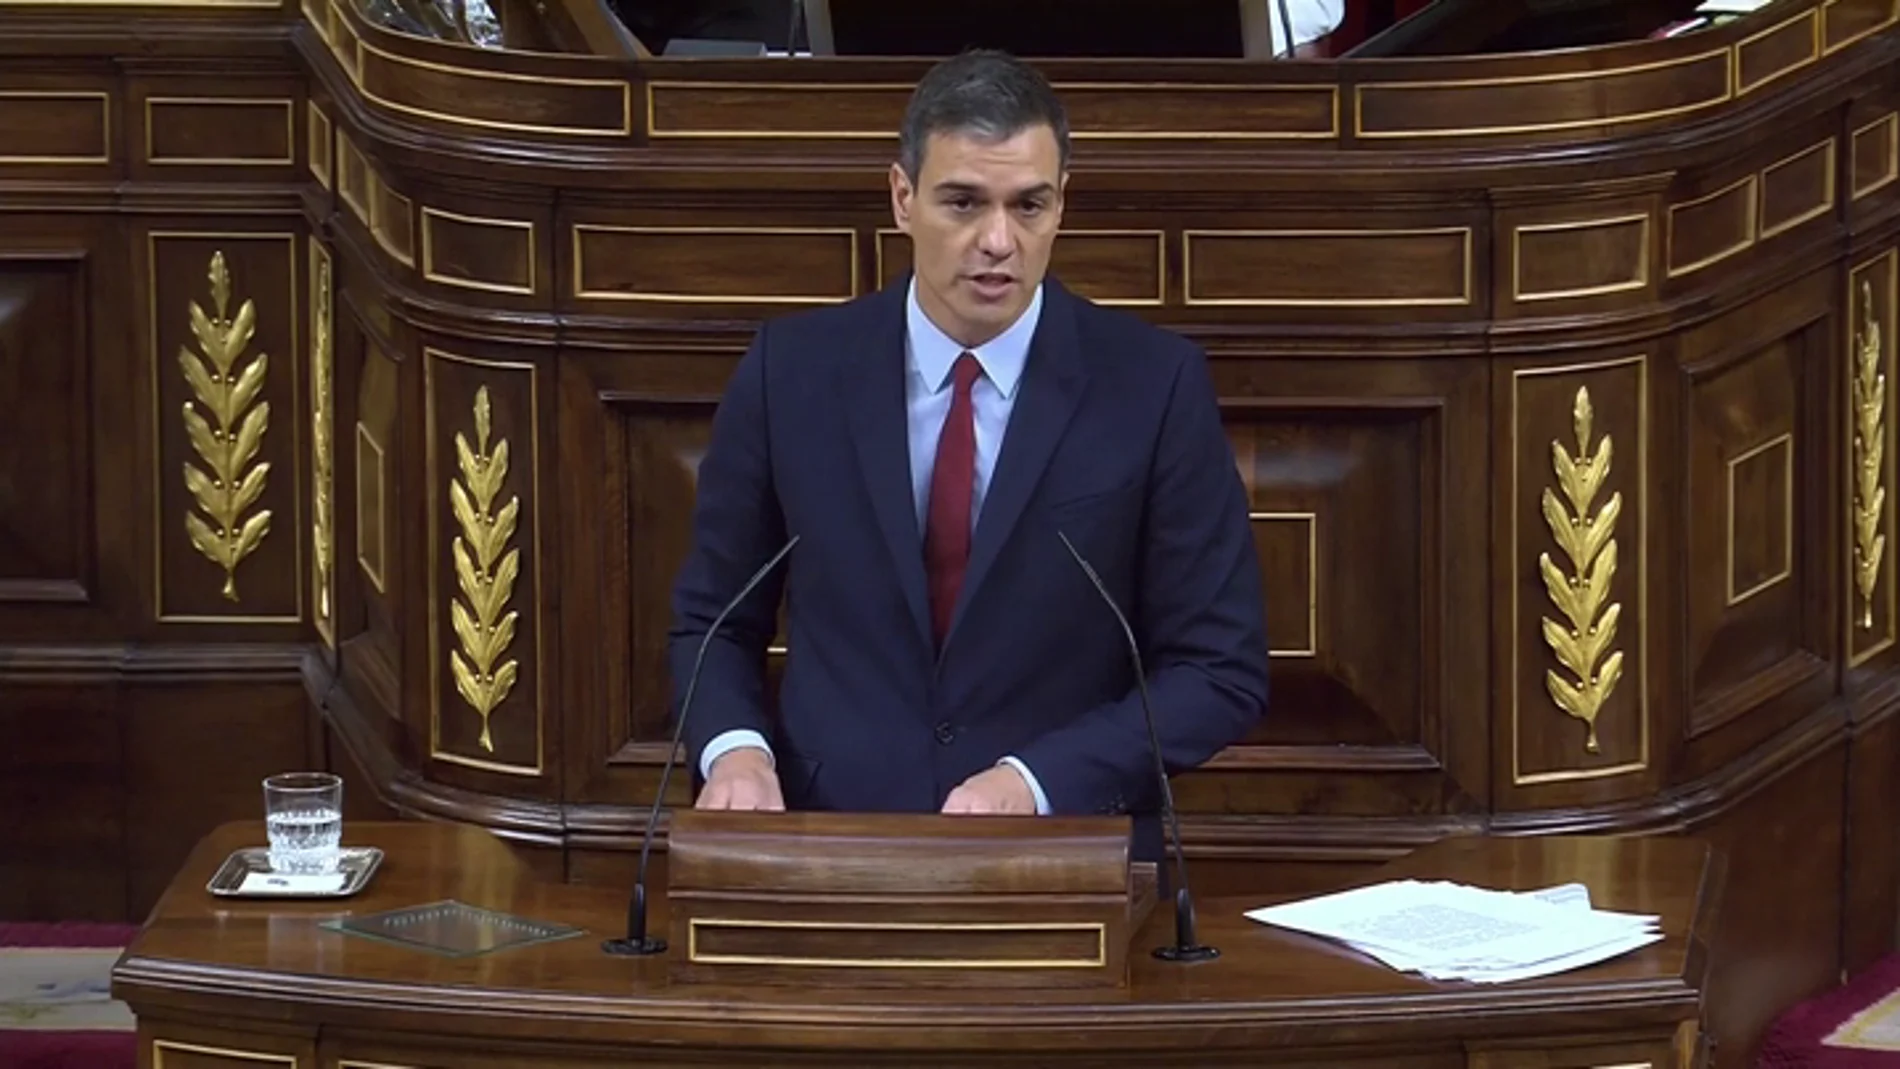  Pedro Sánchez en el Congreso de los Diputados